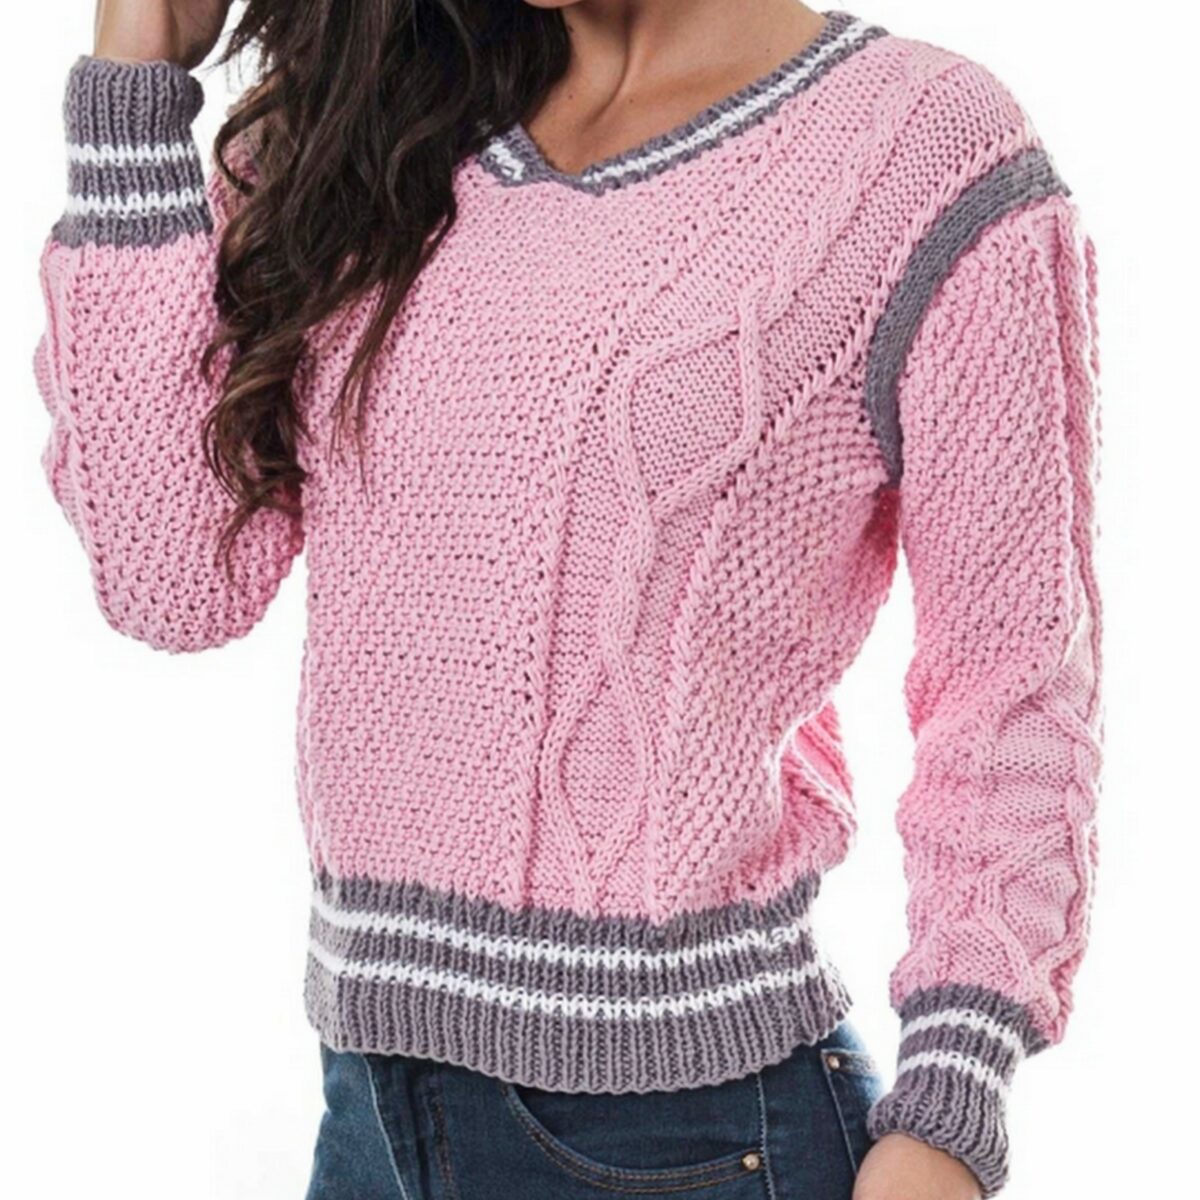 Женский свитер. 5 моделей спицами